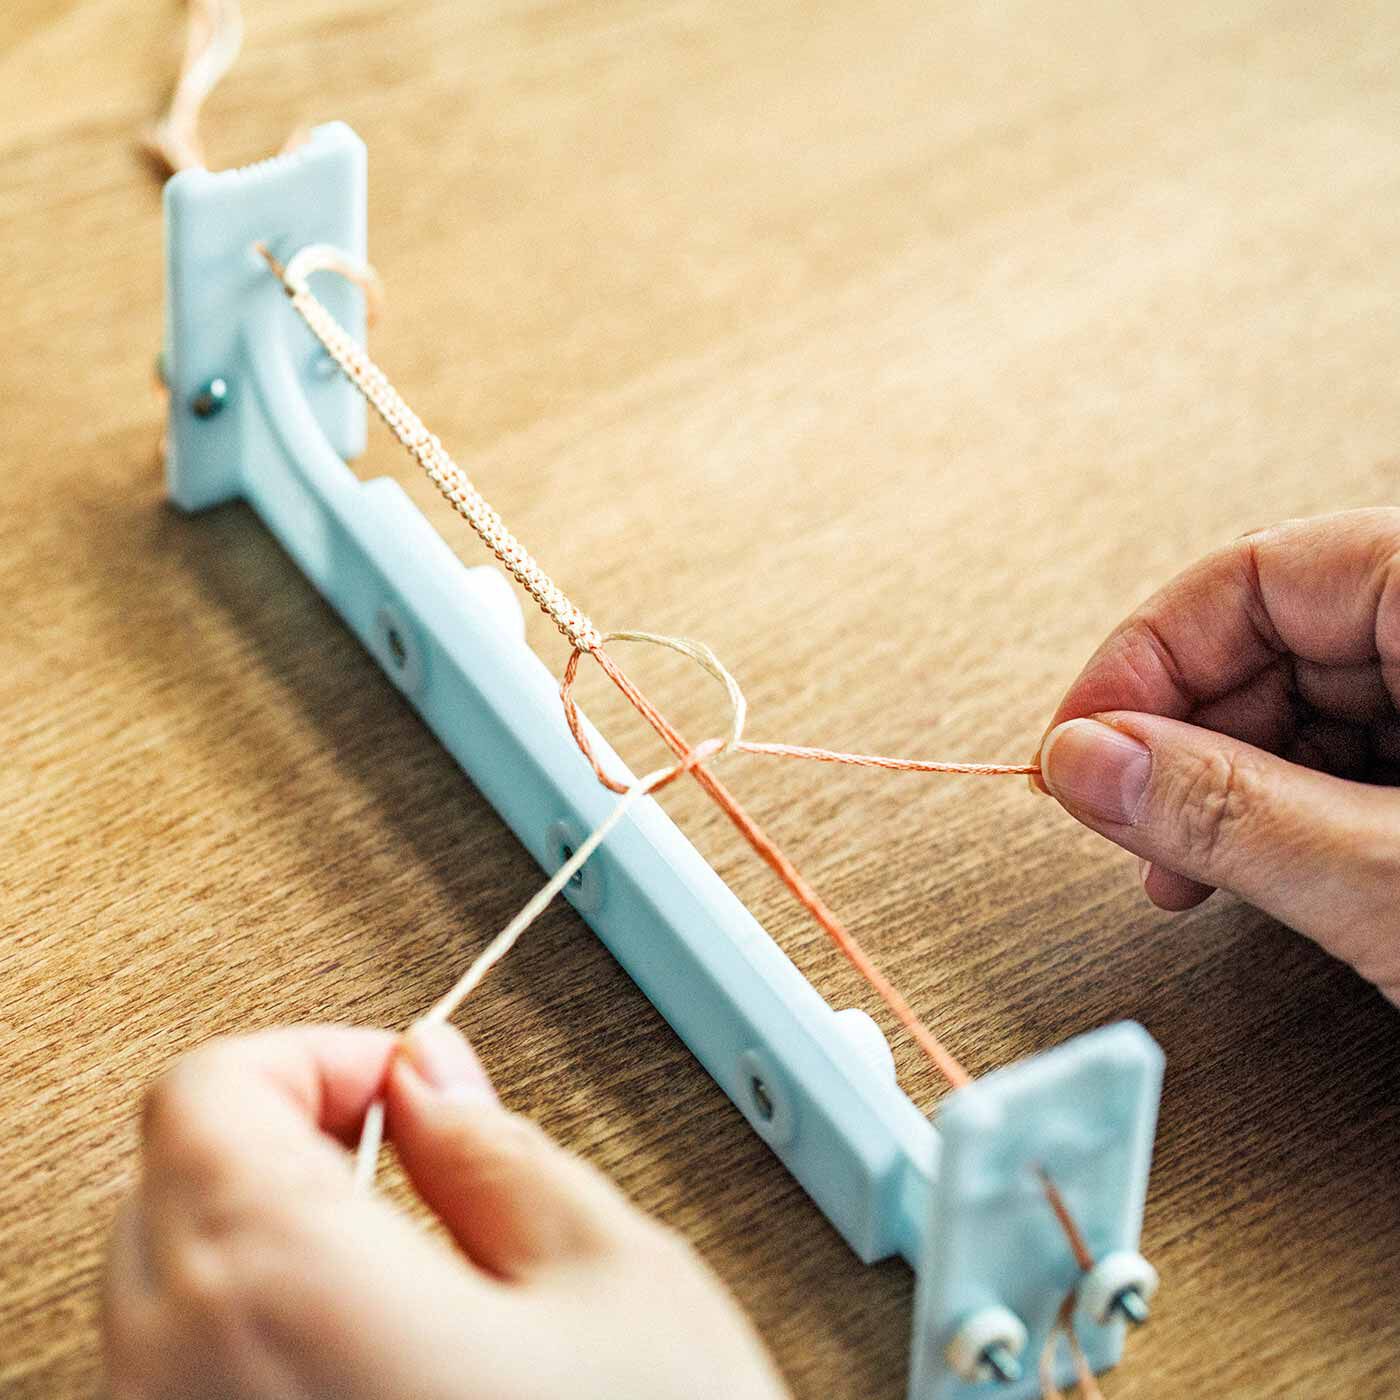 Real Stock|上品に着けたい大人なきらめき 結びと織りを楽しむブレスレット|ブレスレットメーカーにたて糸を張り、別の糸を結んだり織ったりして作ります。